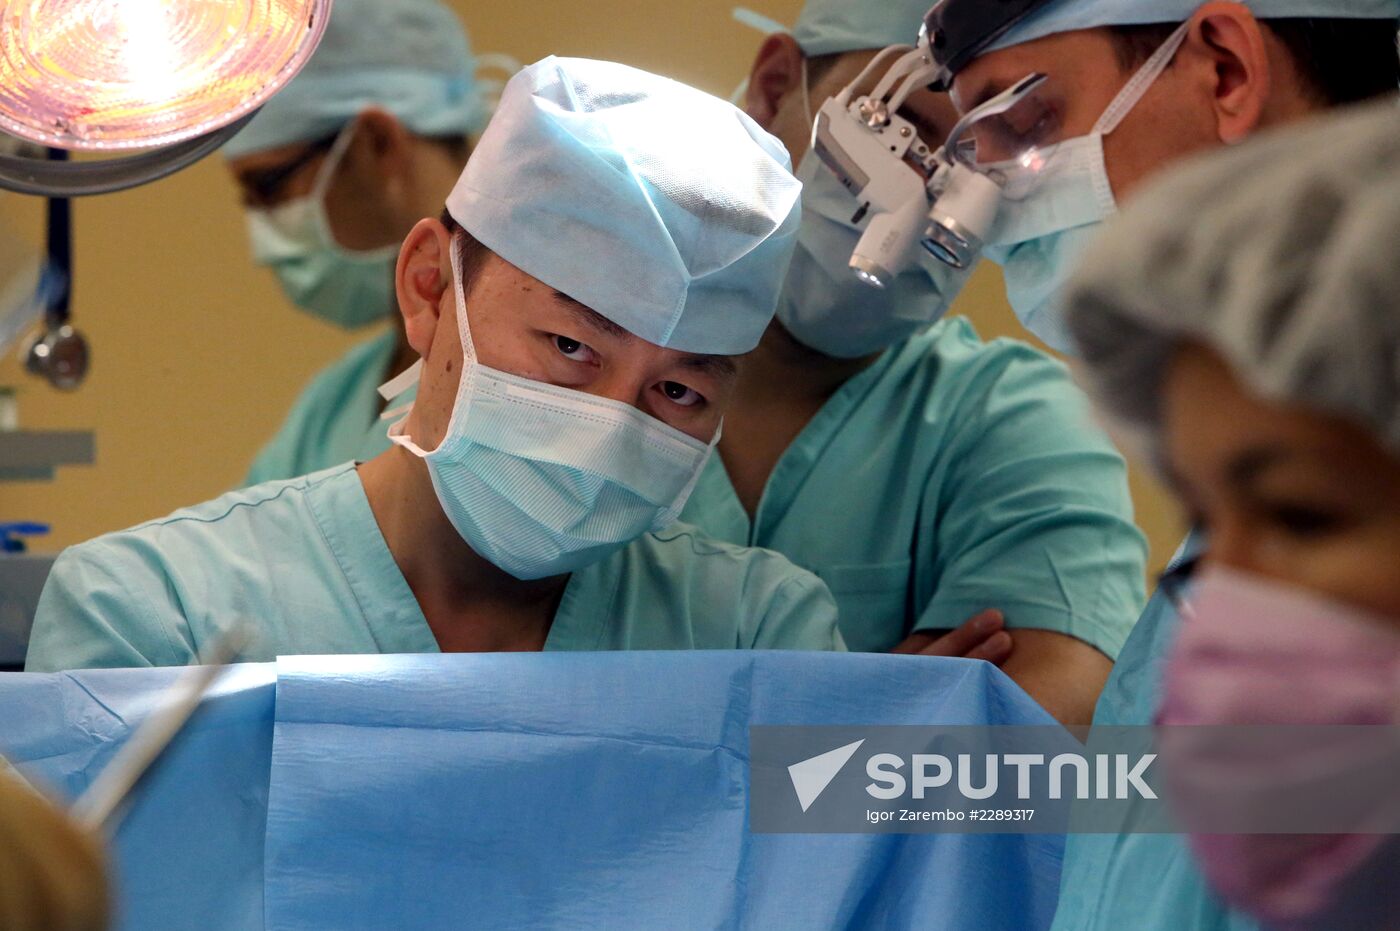 Open Heart Surgery Performed at Kaliningrad Medical Center